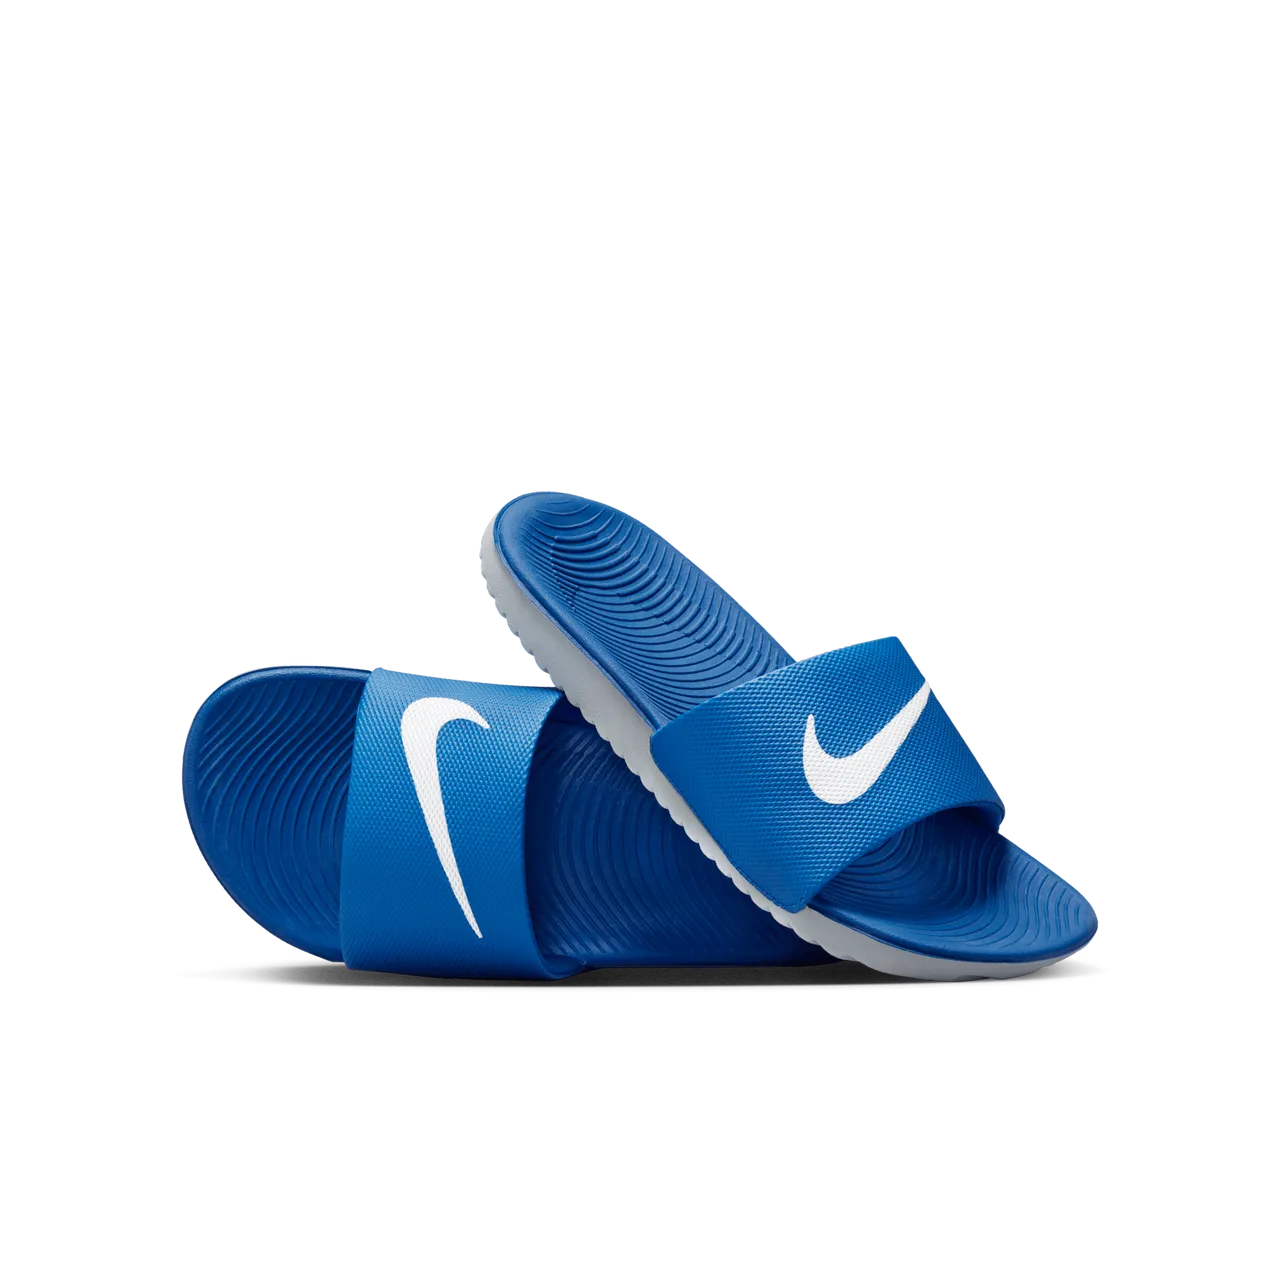 Nike Kawa Slipper kleuters/kids - Blauw